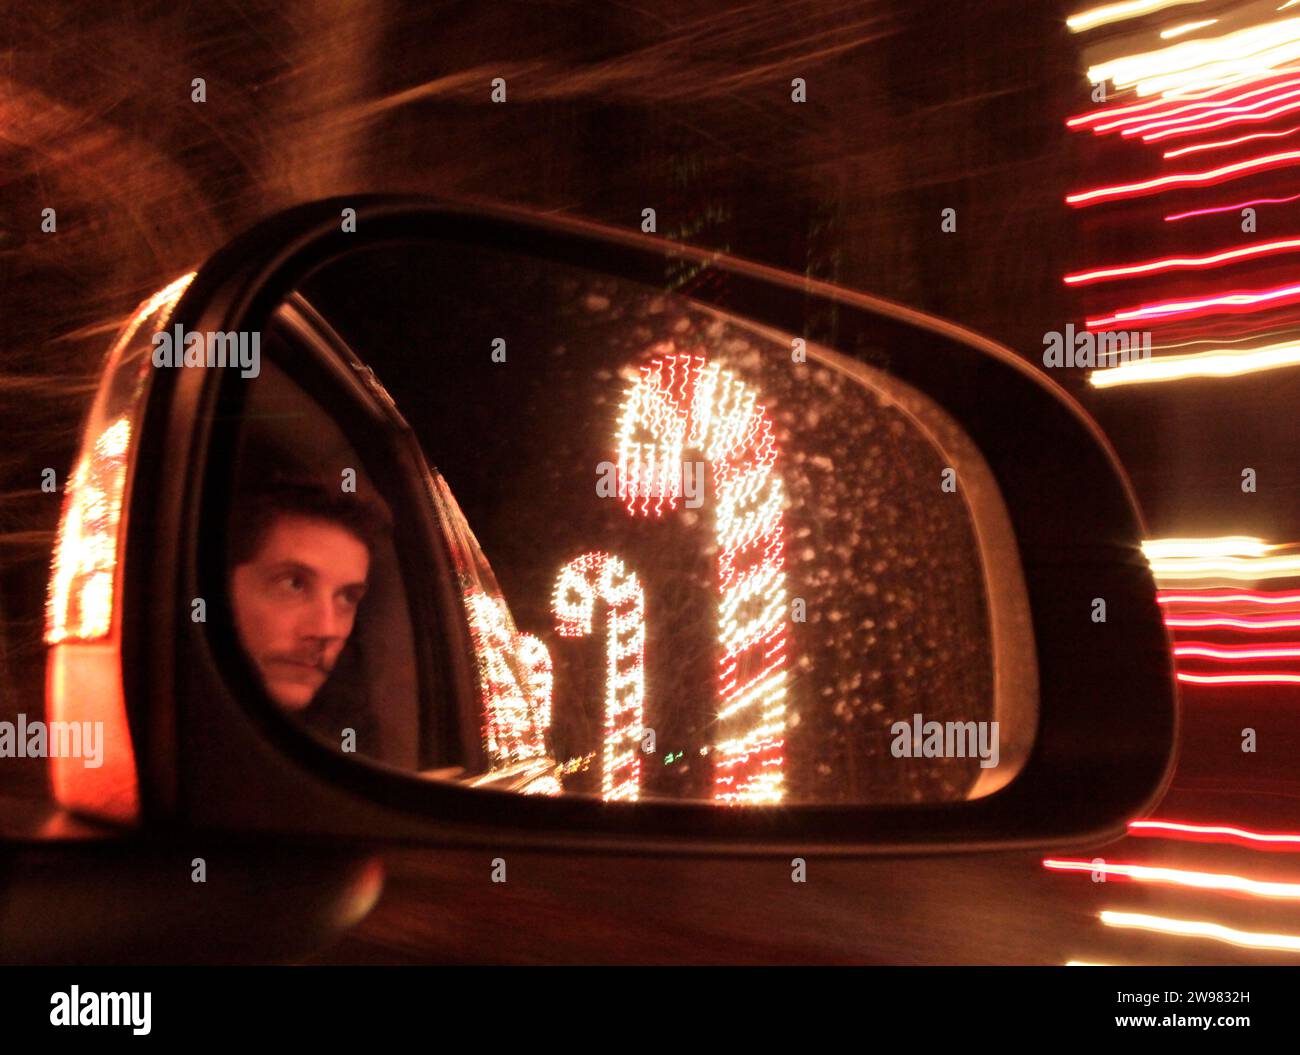 Die Reflexion eines Mannes in einem Autospiegel, vorbei an riesigen, beleuchteten Zuckerstangen. Stockfoto